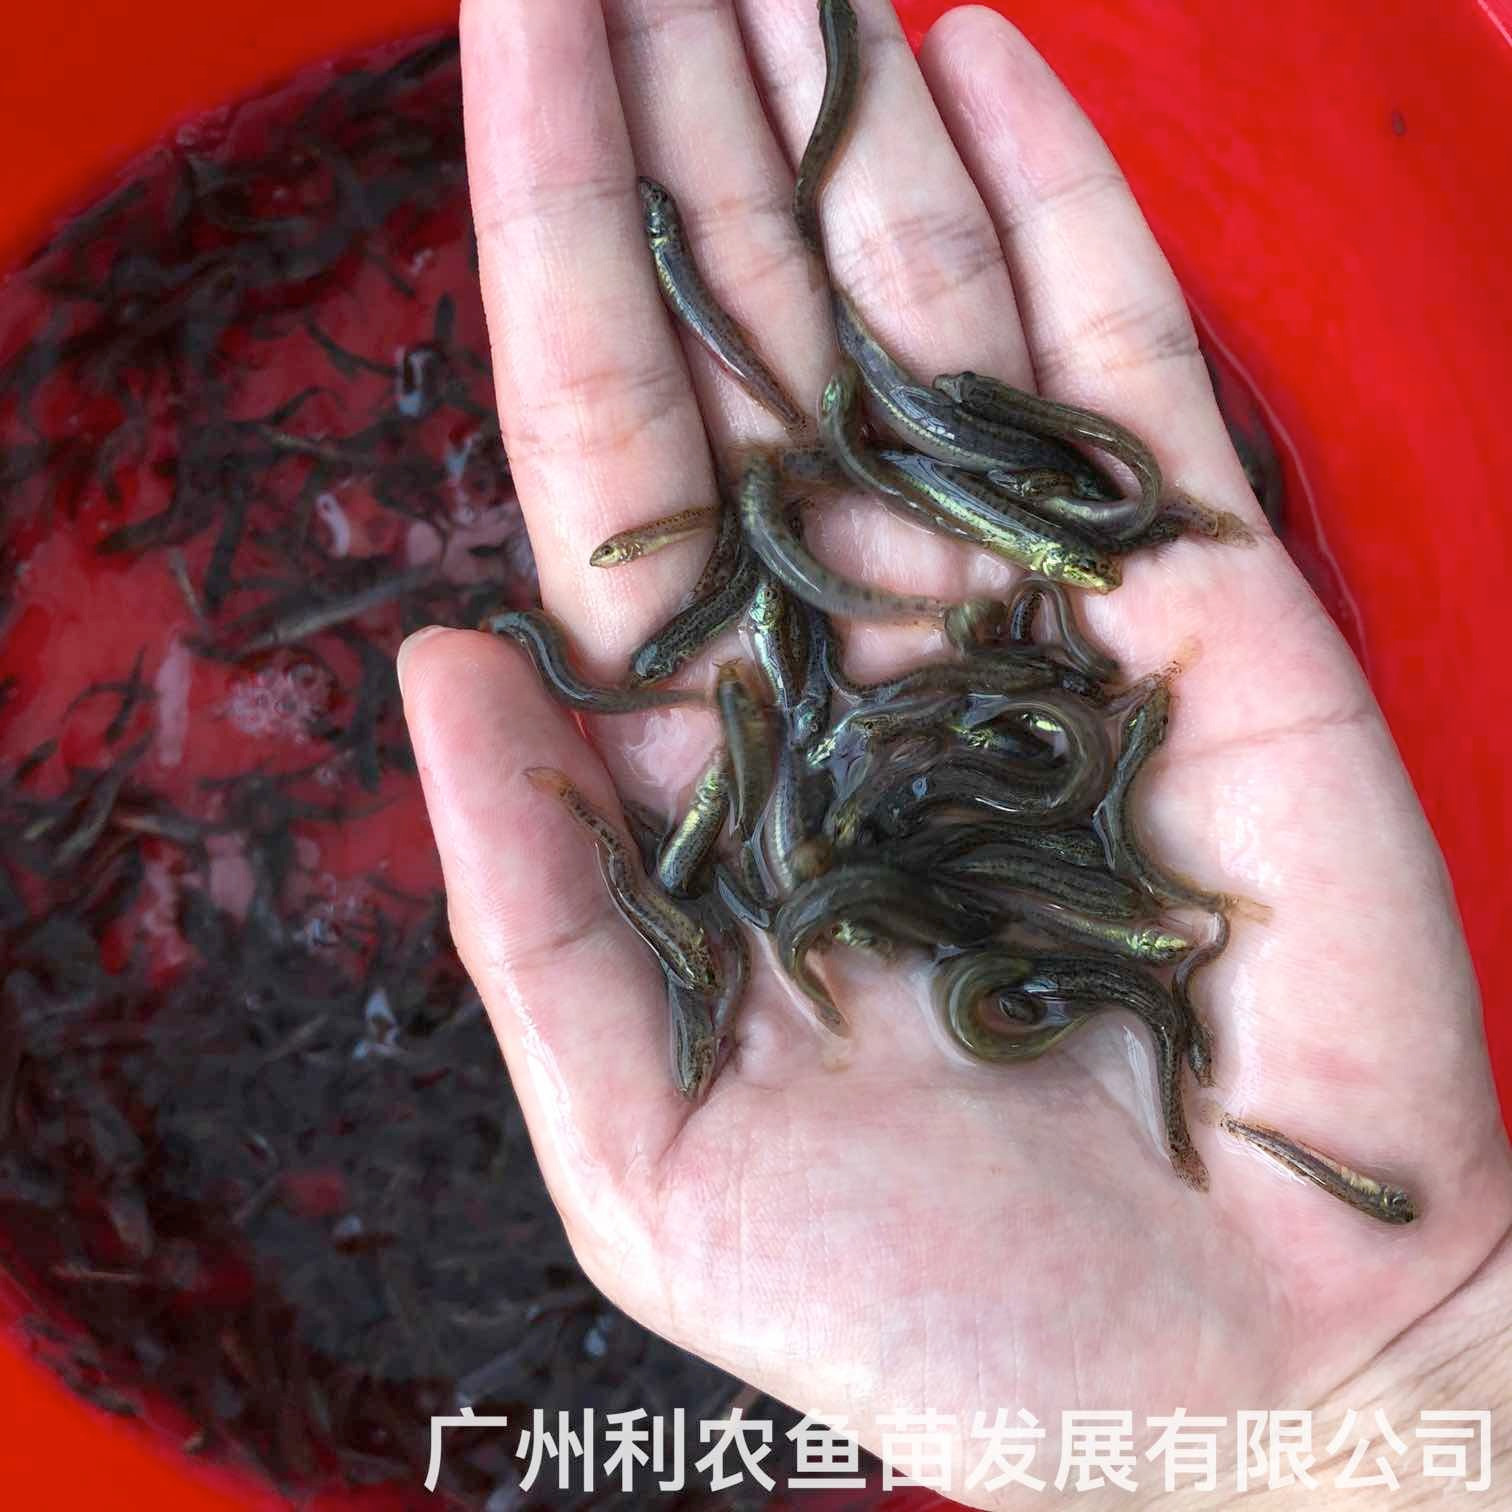 江西抚州台湾泥鳅苗出售江西萍乡泥鳅鱼苗批发